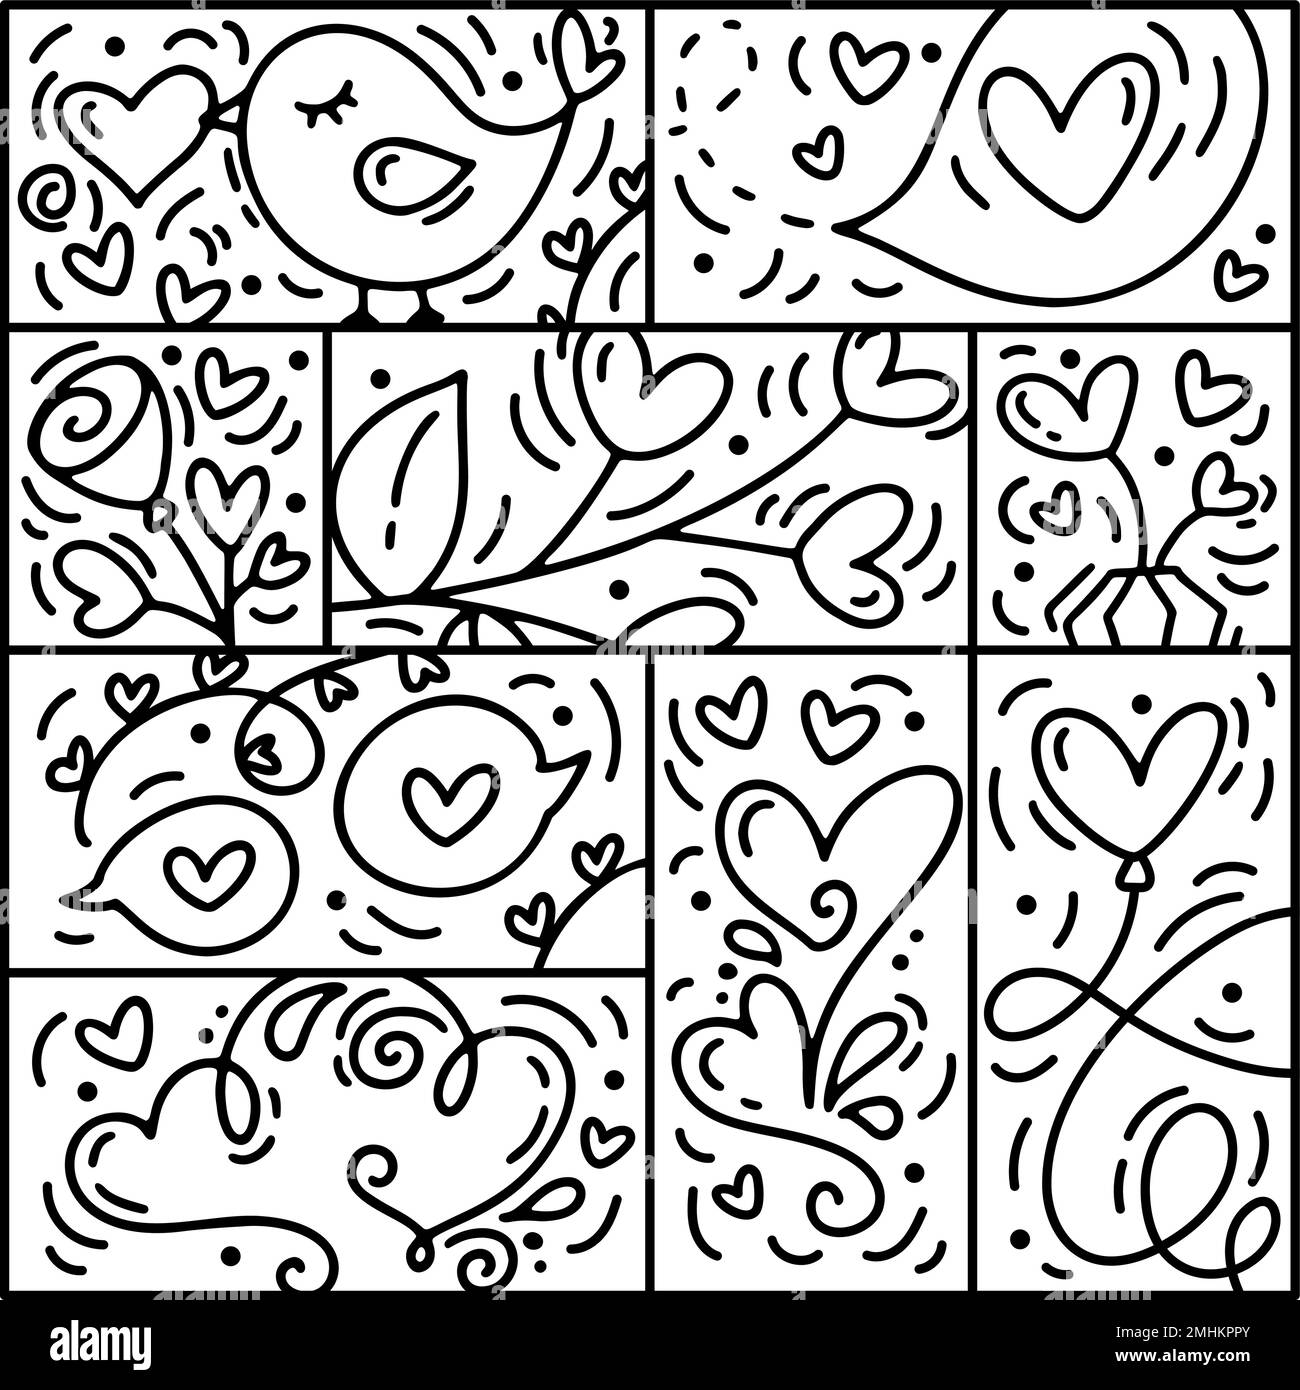 Vektor des Valentinslogo Nahtloses Muster Liebe, Lippen, Herz und Wolke. Handgezeichneter Monolin-Konstrukteur für eine romantische Grußkarte Stock Vektor